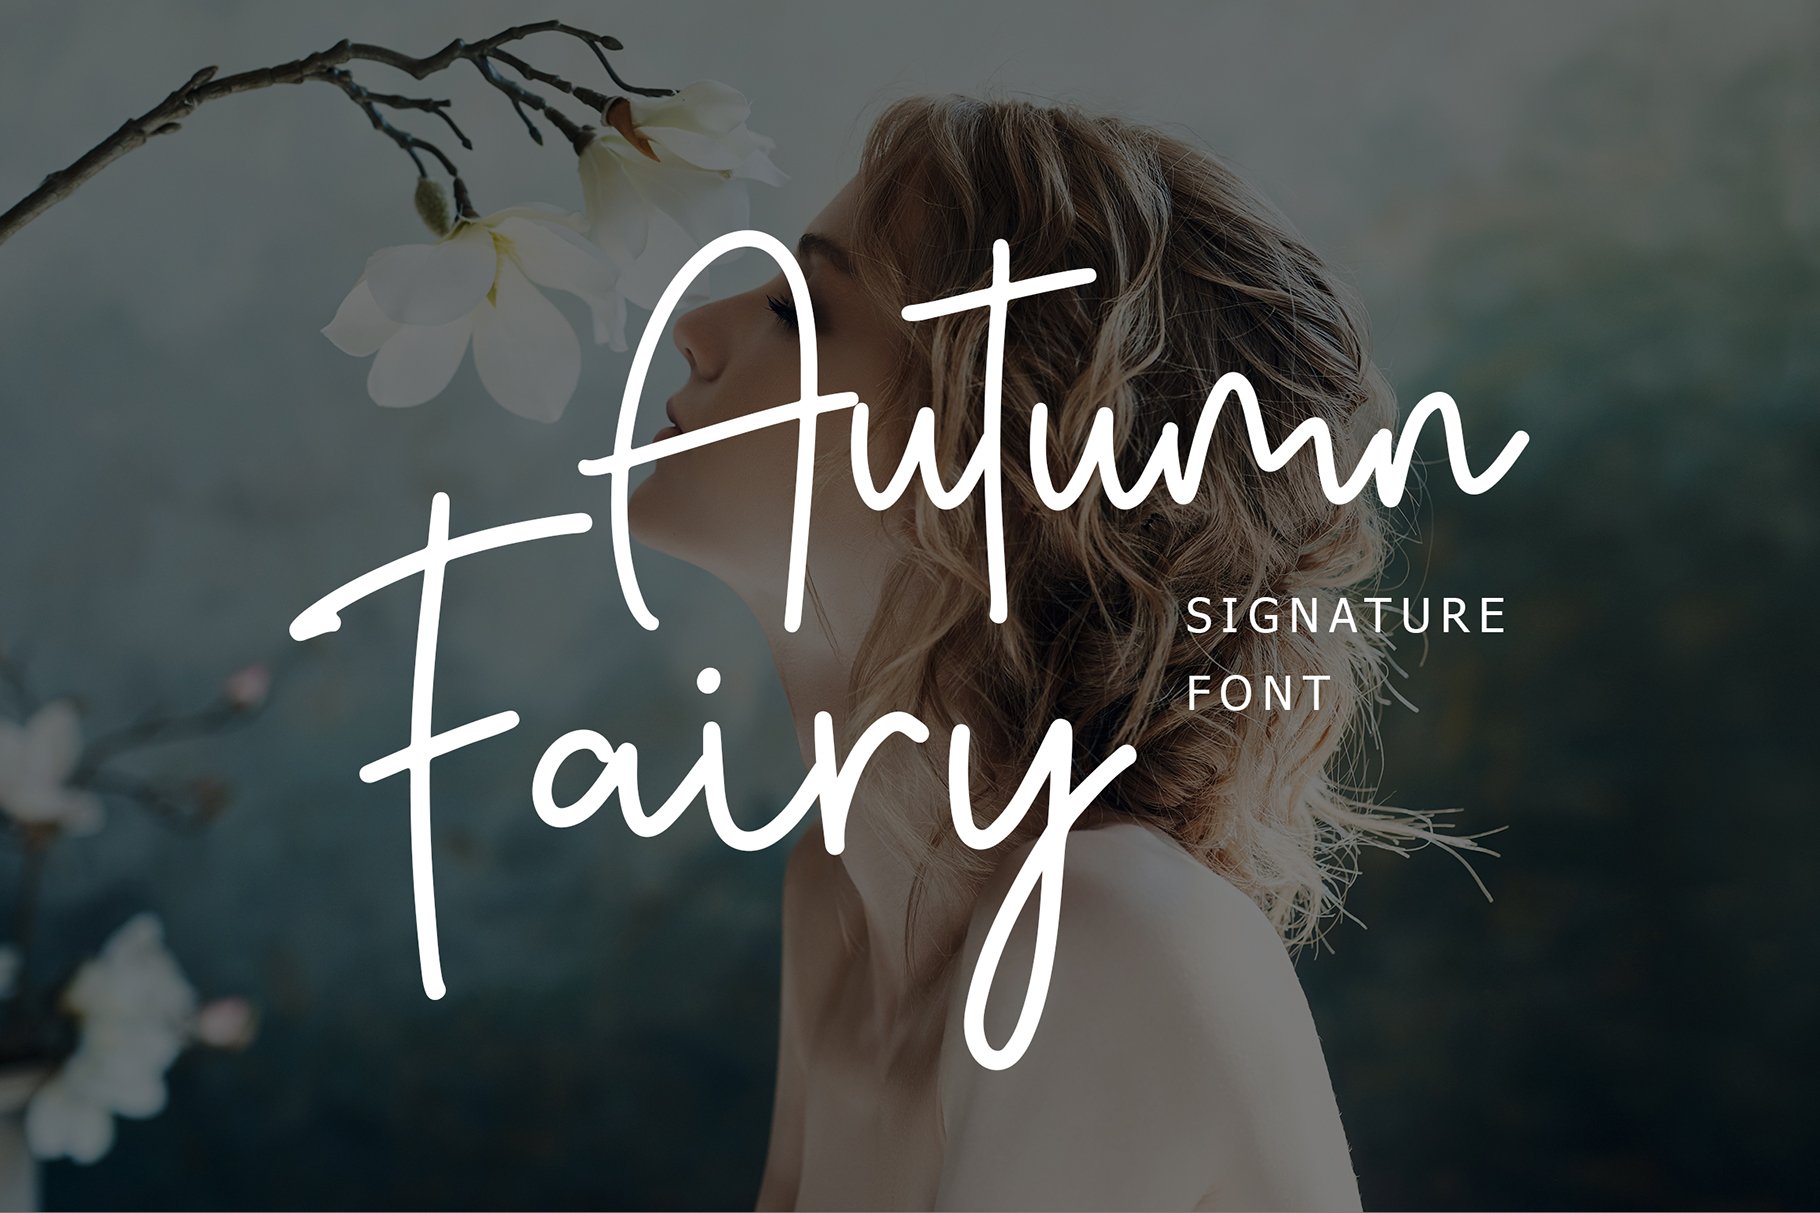 Autumn Fairy Signature Monoline Font cover image.